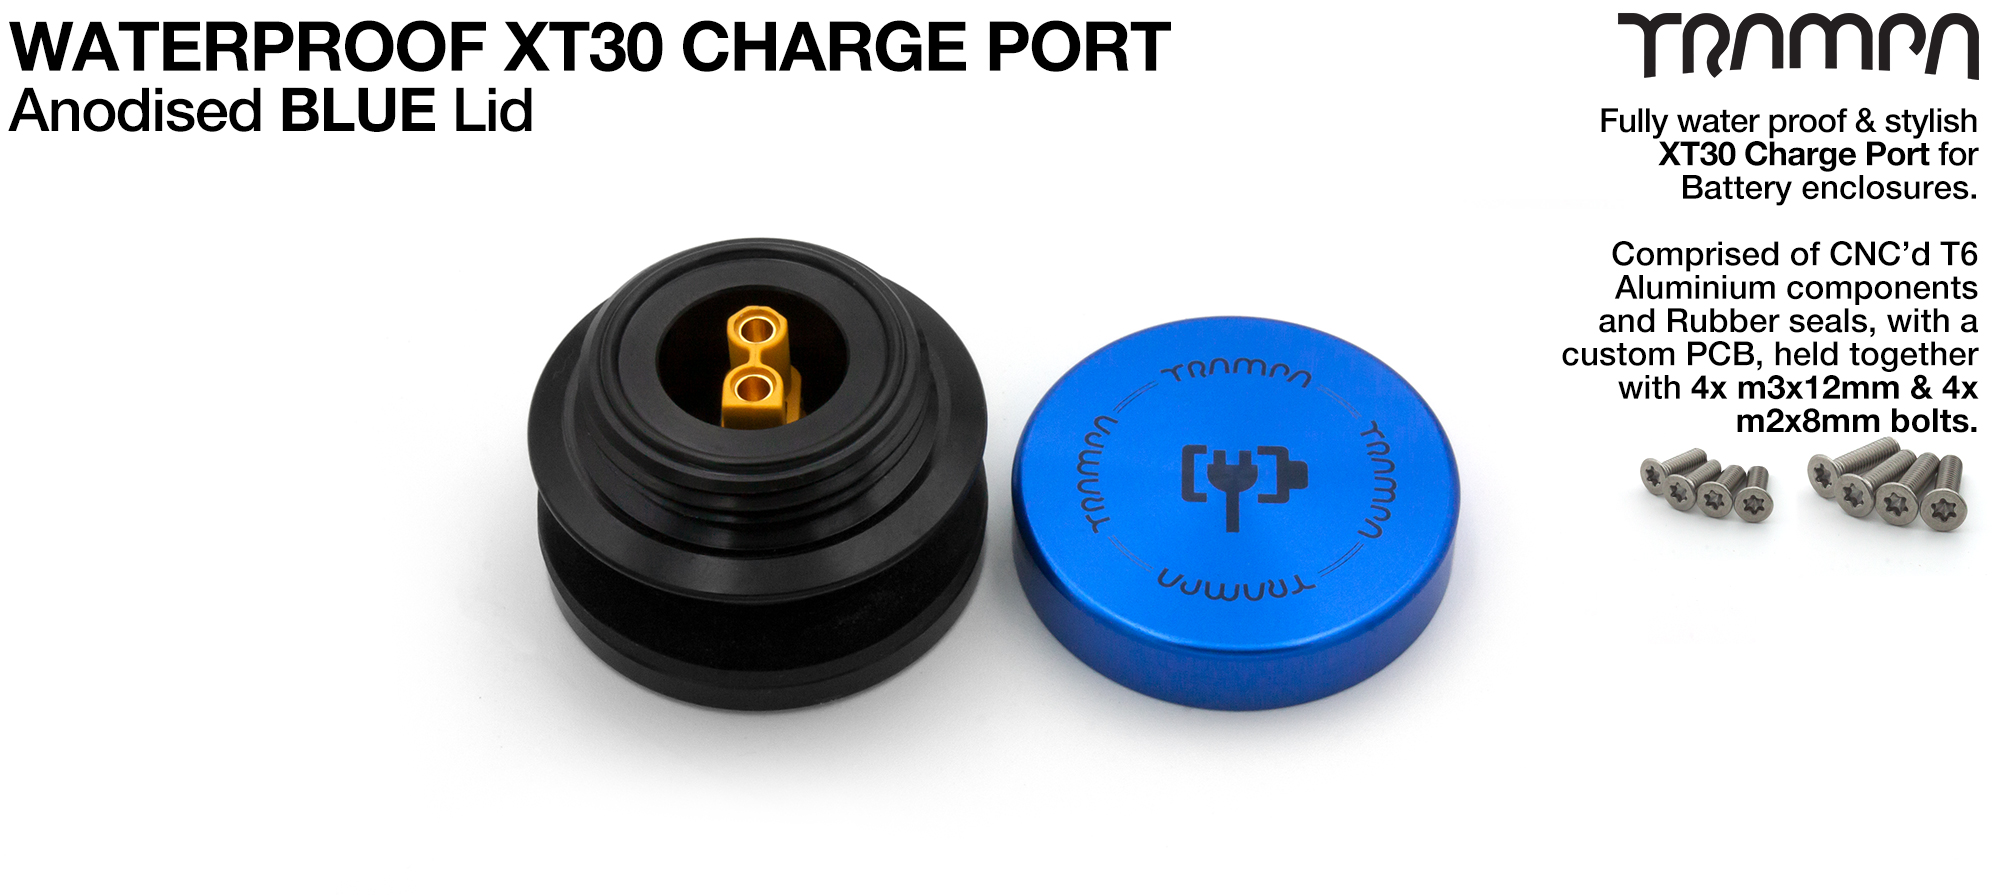 ORRSOM GT XT30 WATERPROOF Charge Port - BLUE